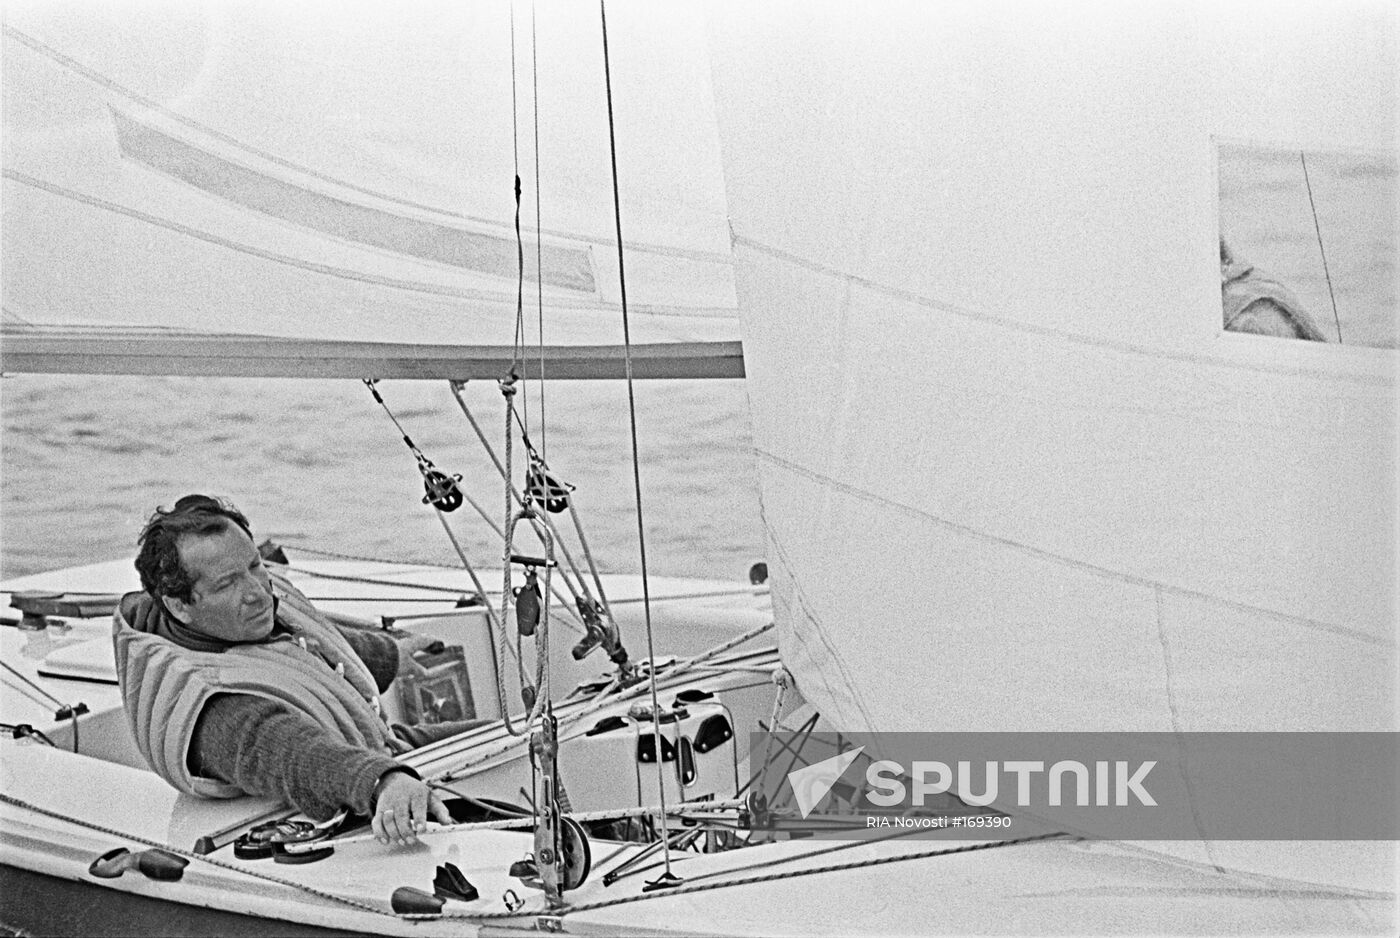 Mankin, sportsman, sailing sport